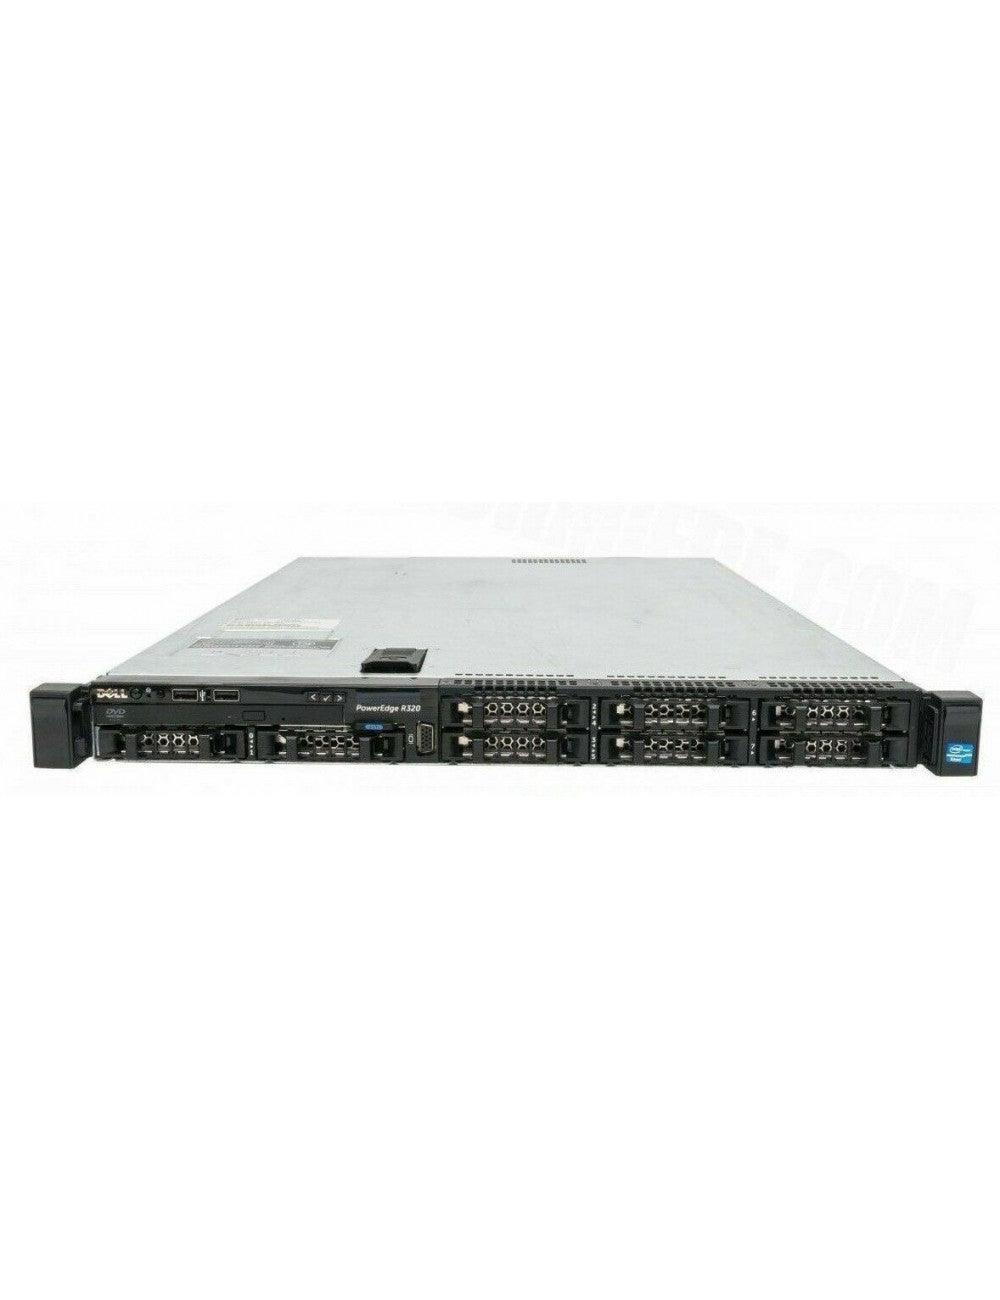 DELL POWEREDGE R630 8 x SFF Server ricondizionato 2 x 14 Core E5-2683 V3 128GB RAM ddr4 HDD 2x1,2 Tb H730 Raid Ctrl RACK 1U 4xLAN1000 2x495W PSU - {{ collection.title }} - Rivivonet